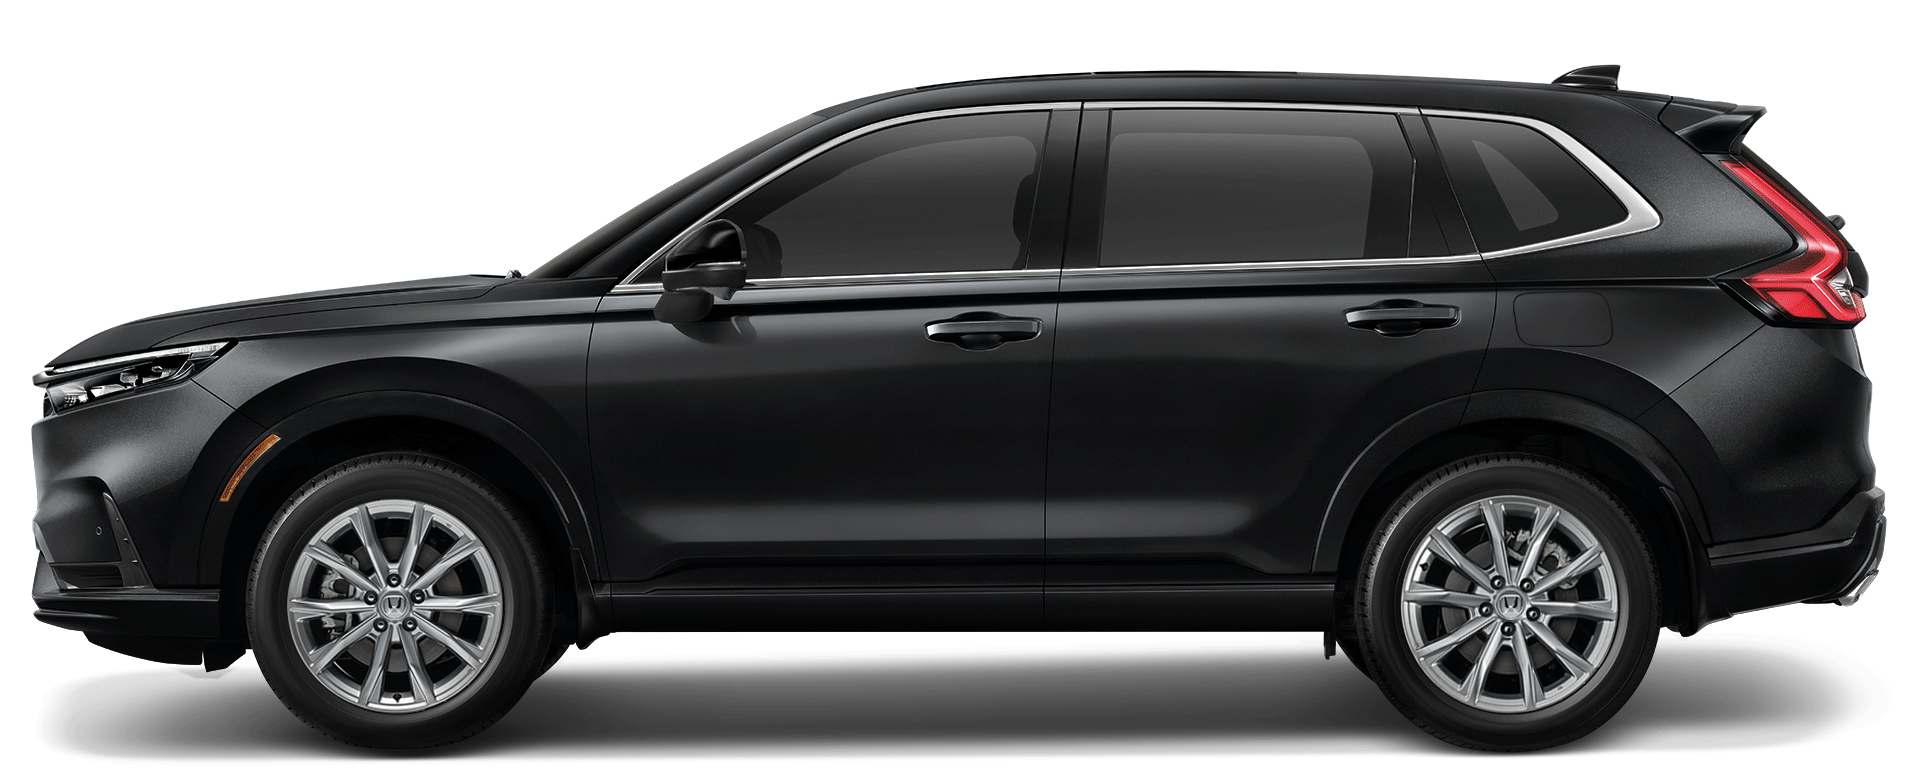 Crystal-Black Honda All-New CR-V